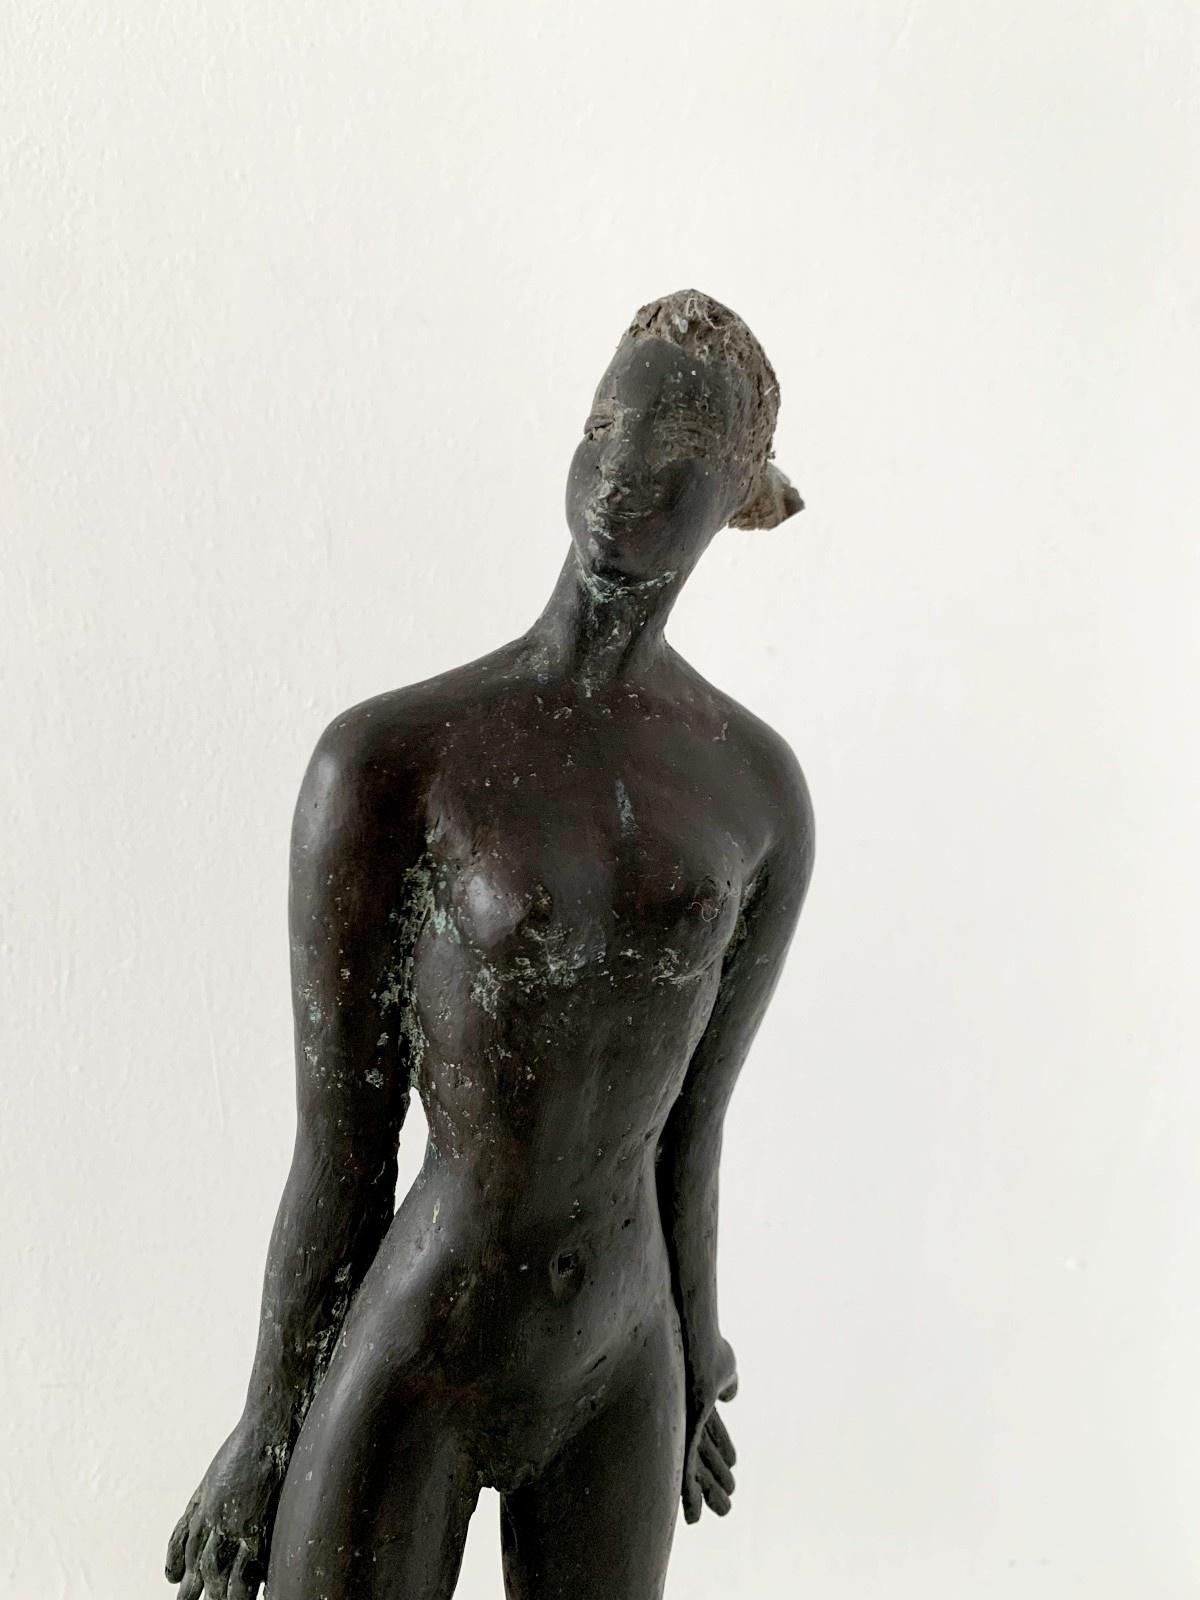 Une femme . Sculpture figurative contemporaine en bronze, Nu féminin, artiste italien - Or Figurative Sculpture par Giuseppe del Debbio